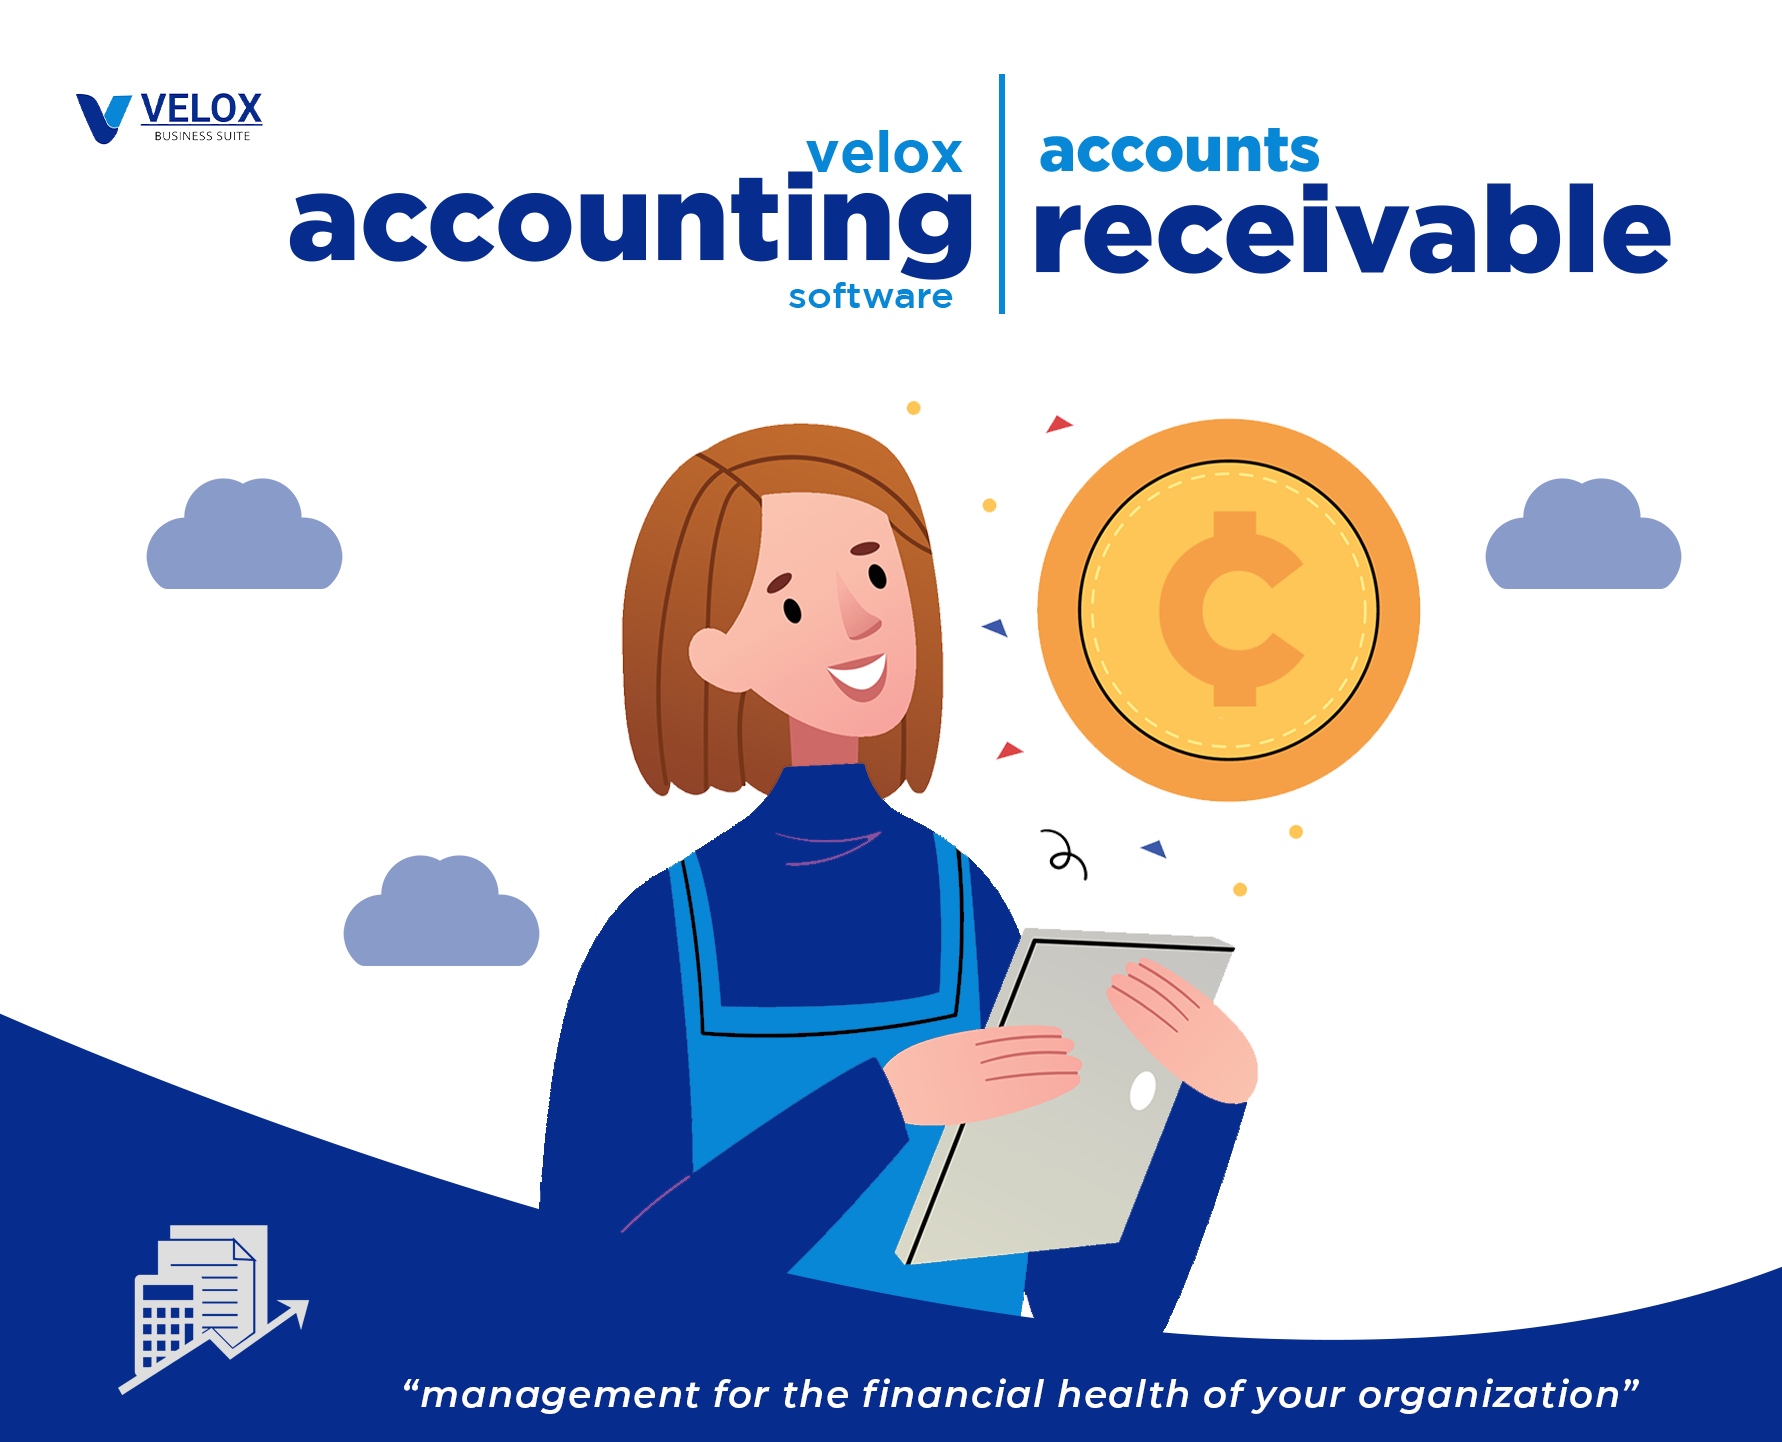 Accounts Receivable (AR)